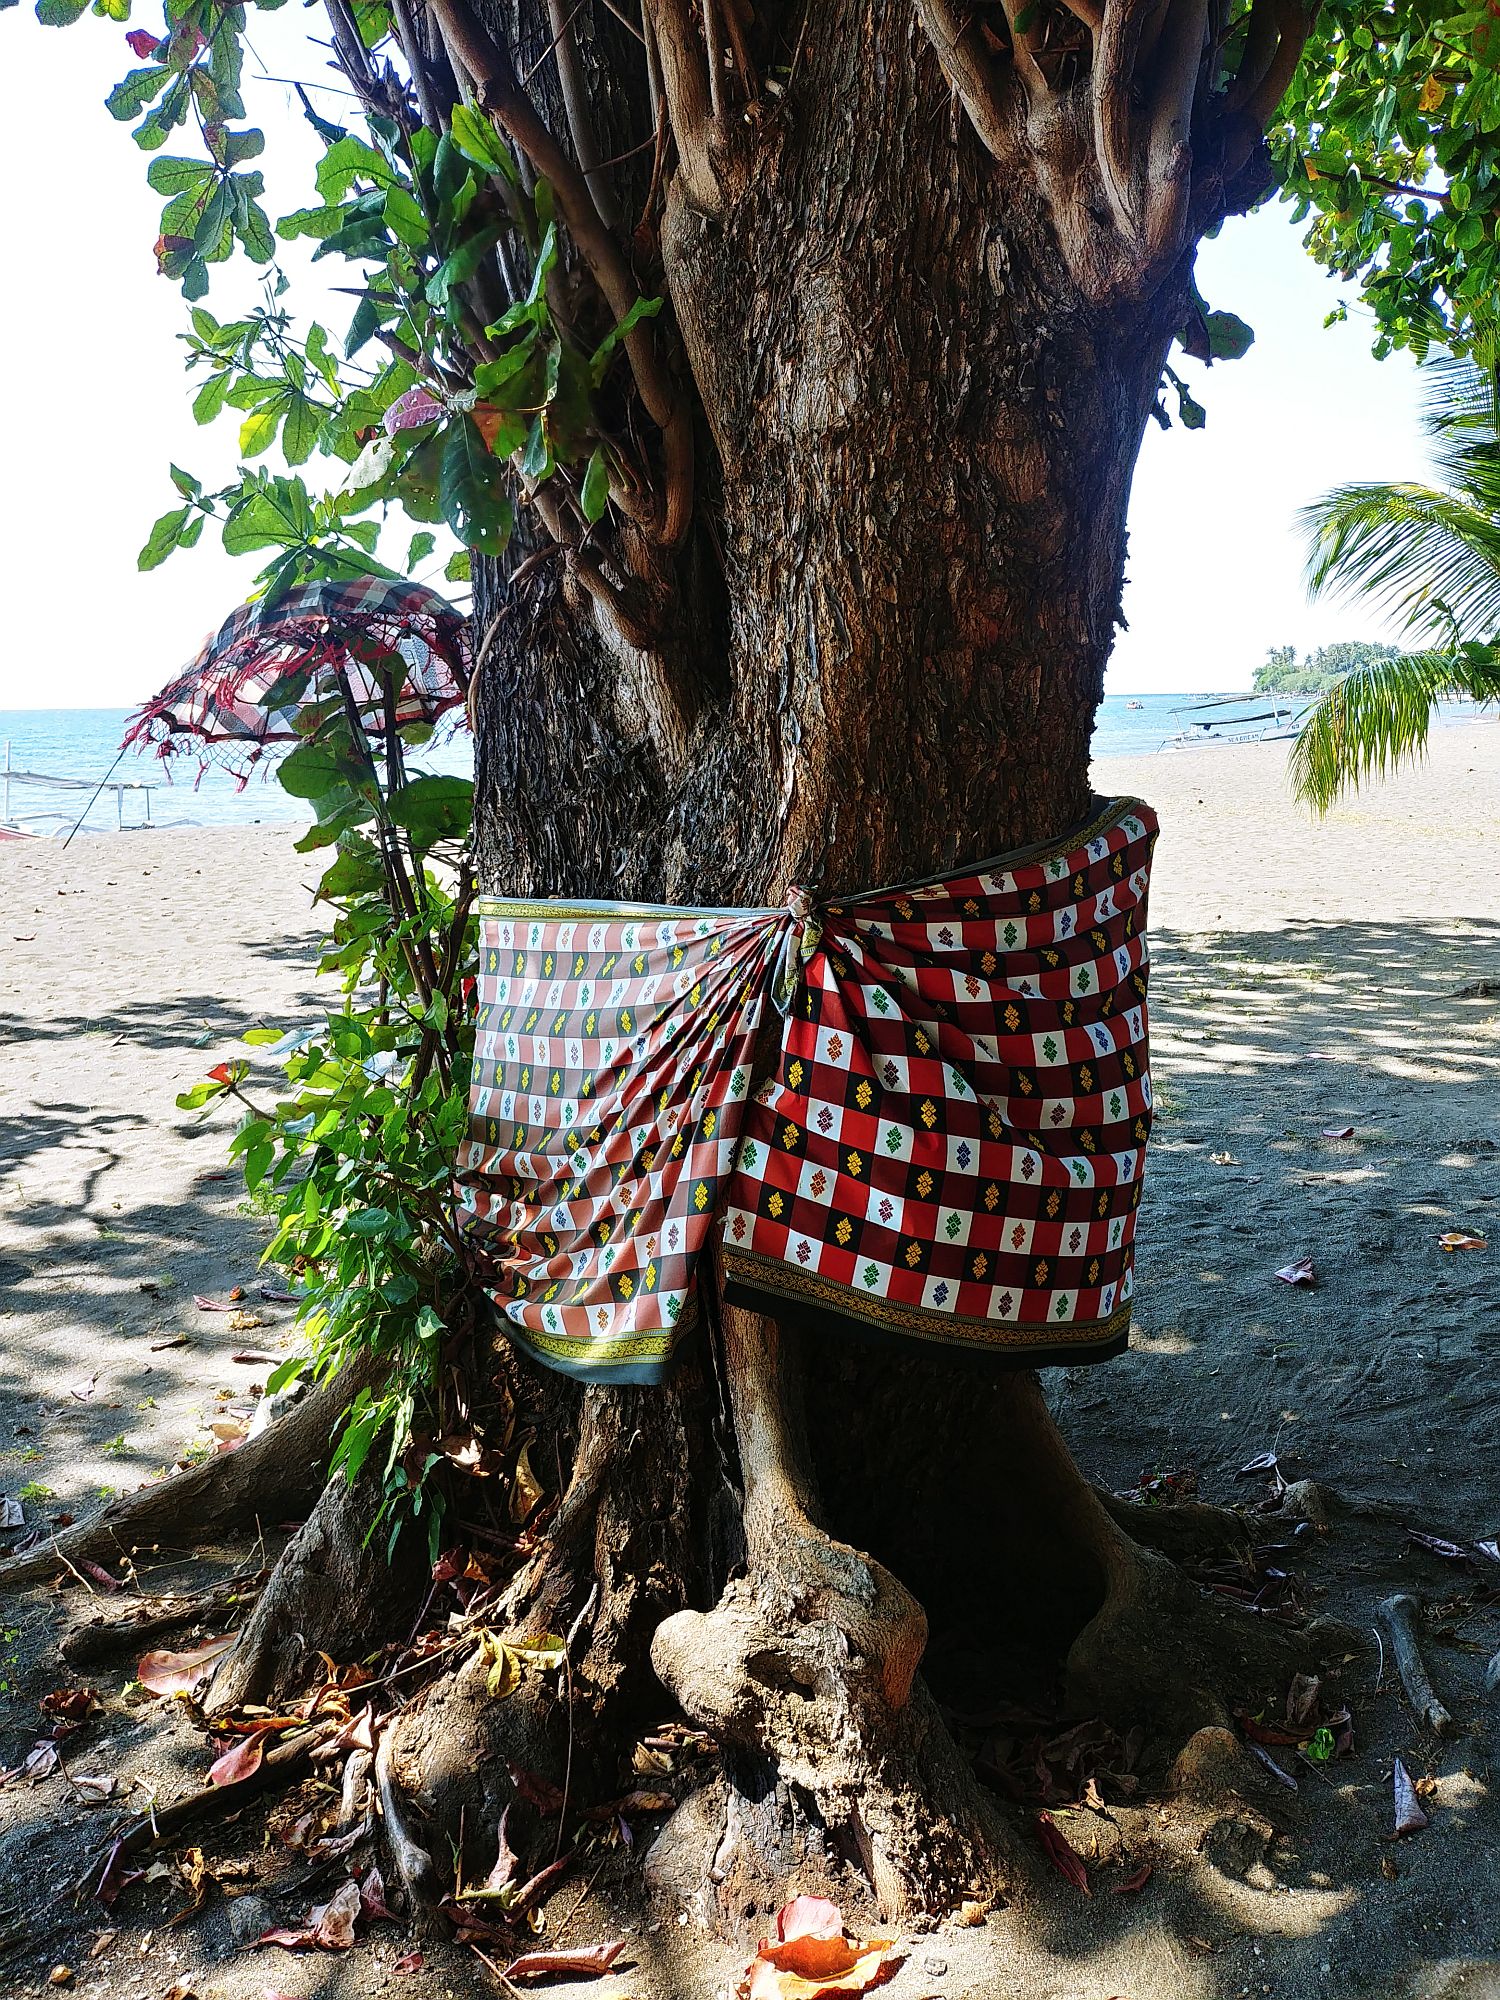 Tree with sarong